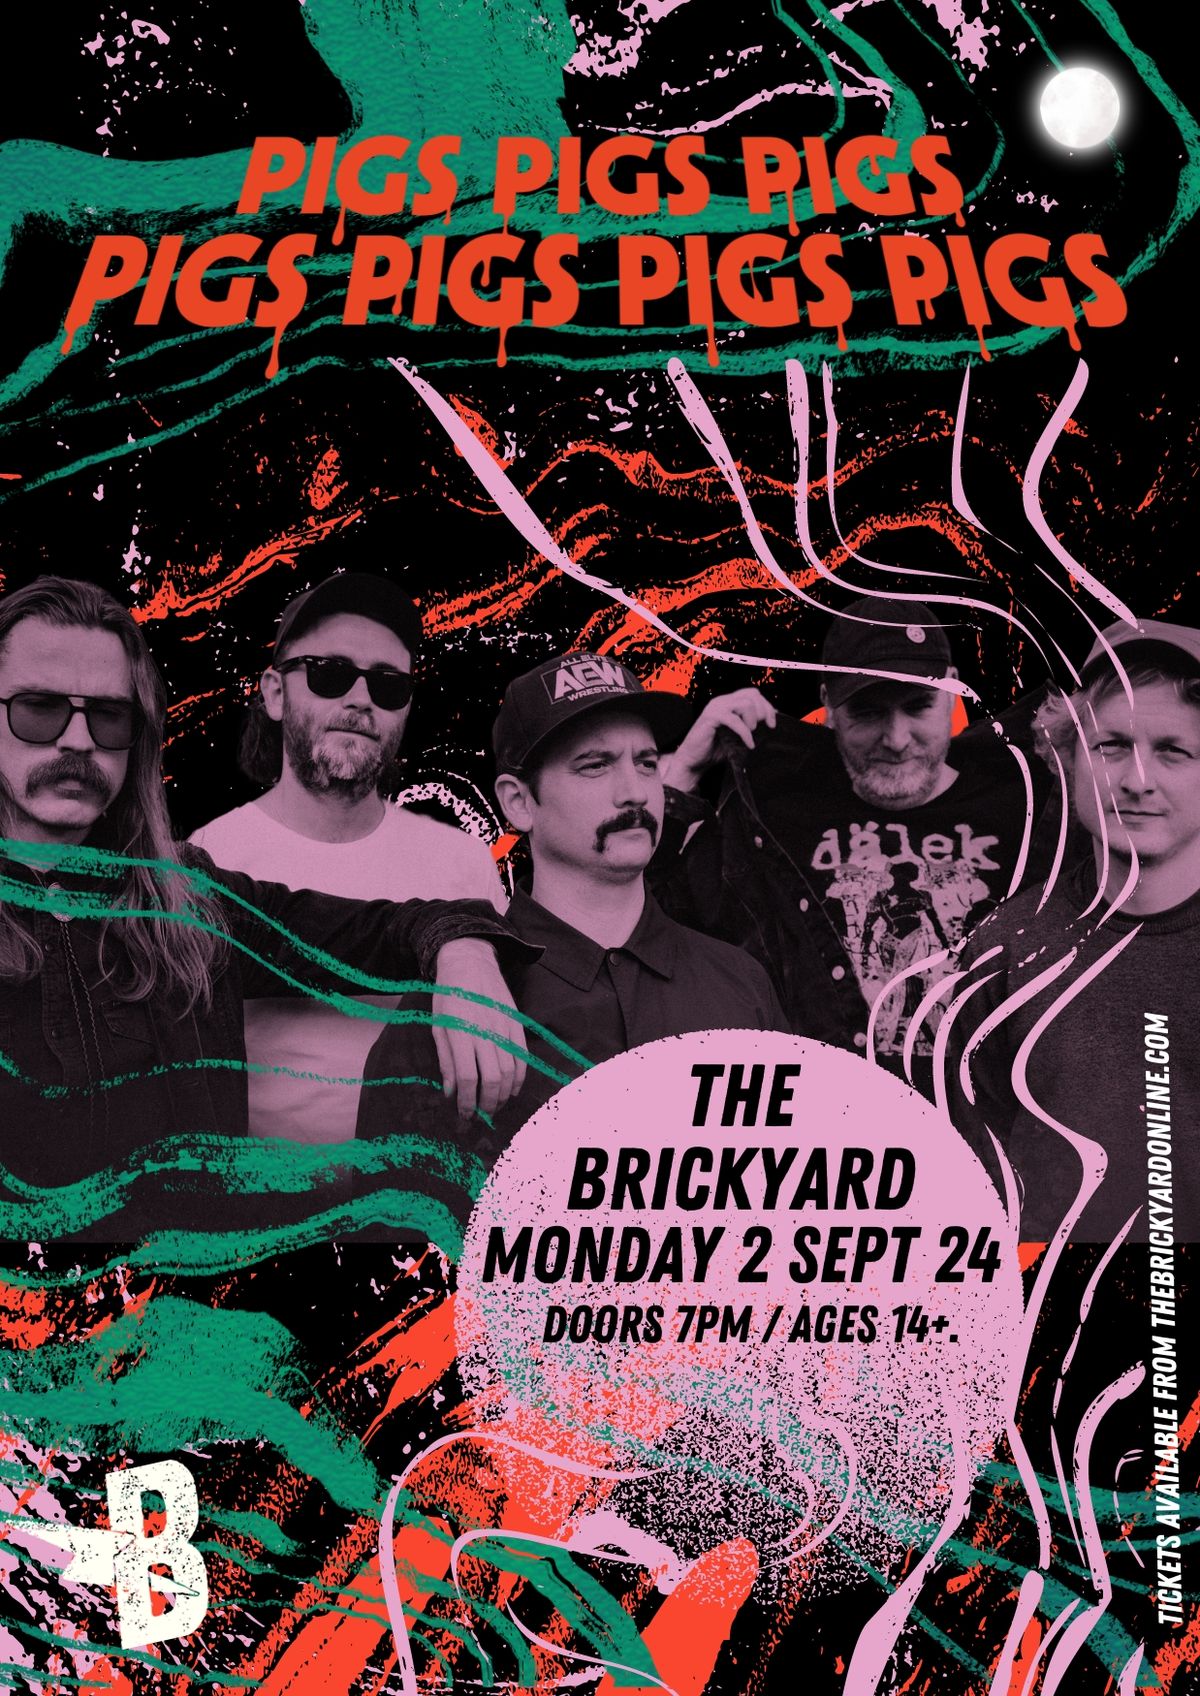 Pigs Pigs Pigs Pigs Pigs Pigs Pigs at The Brickyard, Carlisle